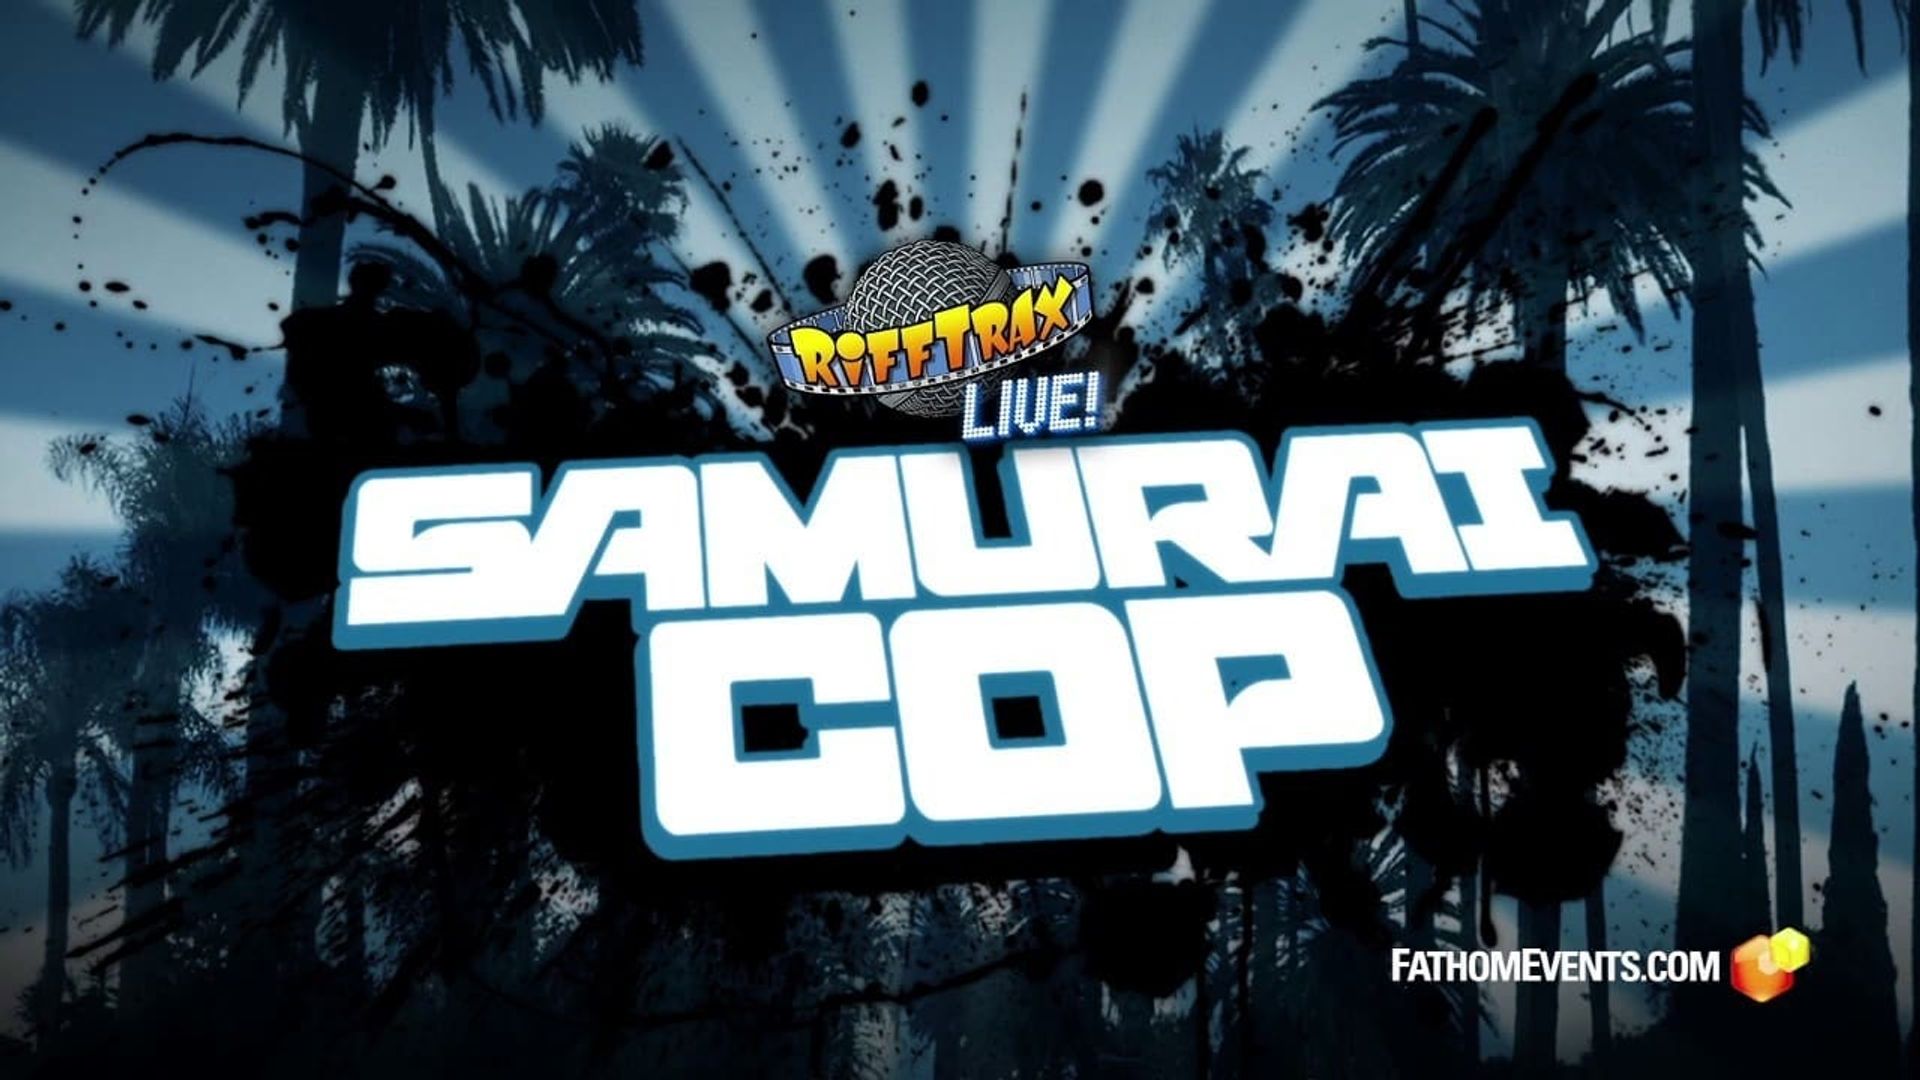 RiffTrax Live: Samurai Cop background